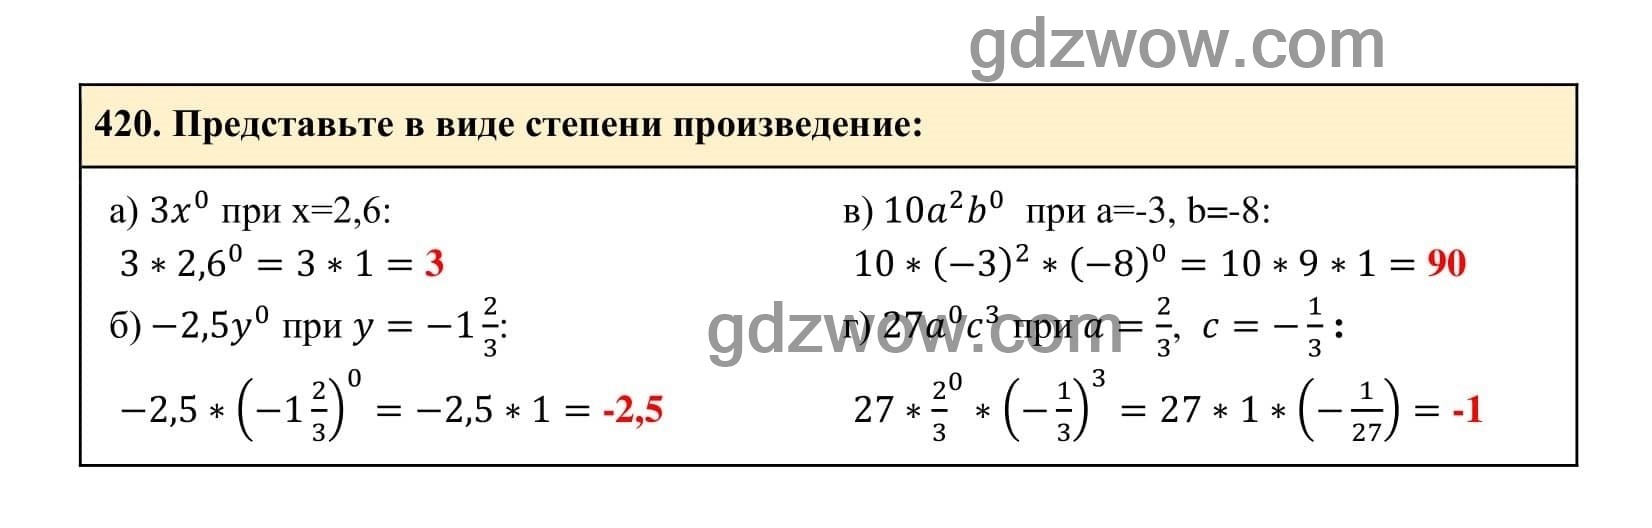 Упражнение 420 - ГДЗ по Алгебре 7 класс Учебник Макарычев (решебник) - GDZwow